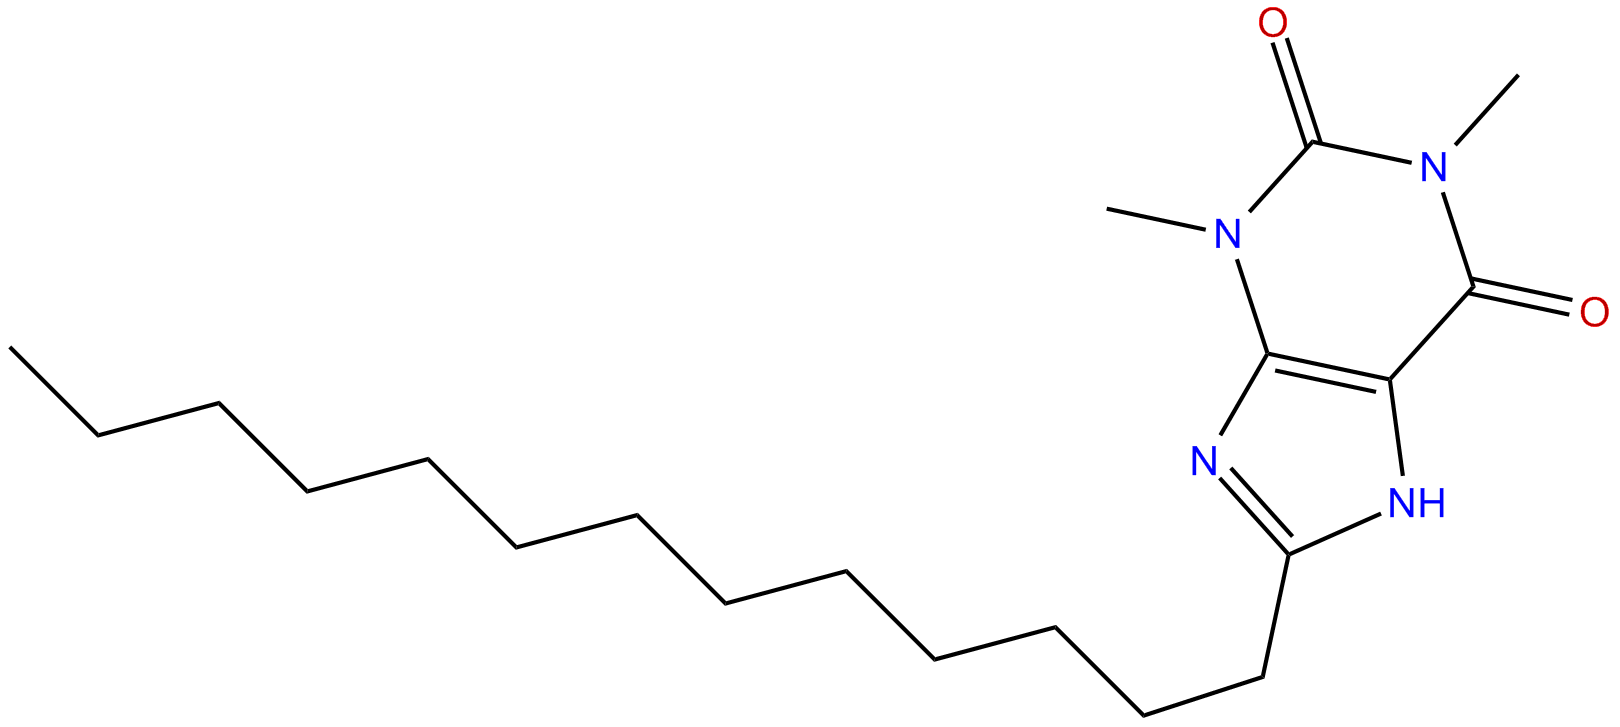 Image of 3,7-dihydro-1,3-dimethyl-8-tridecyl-1H-purine-2,6-dione